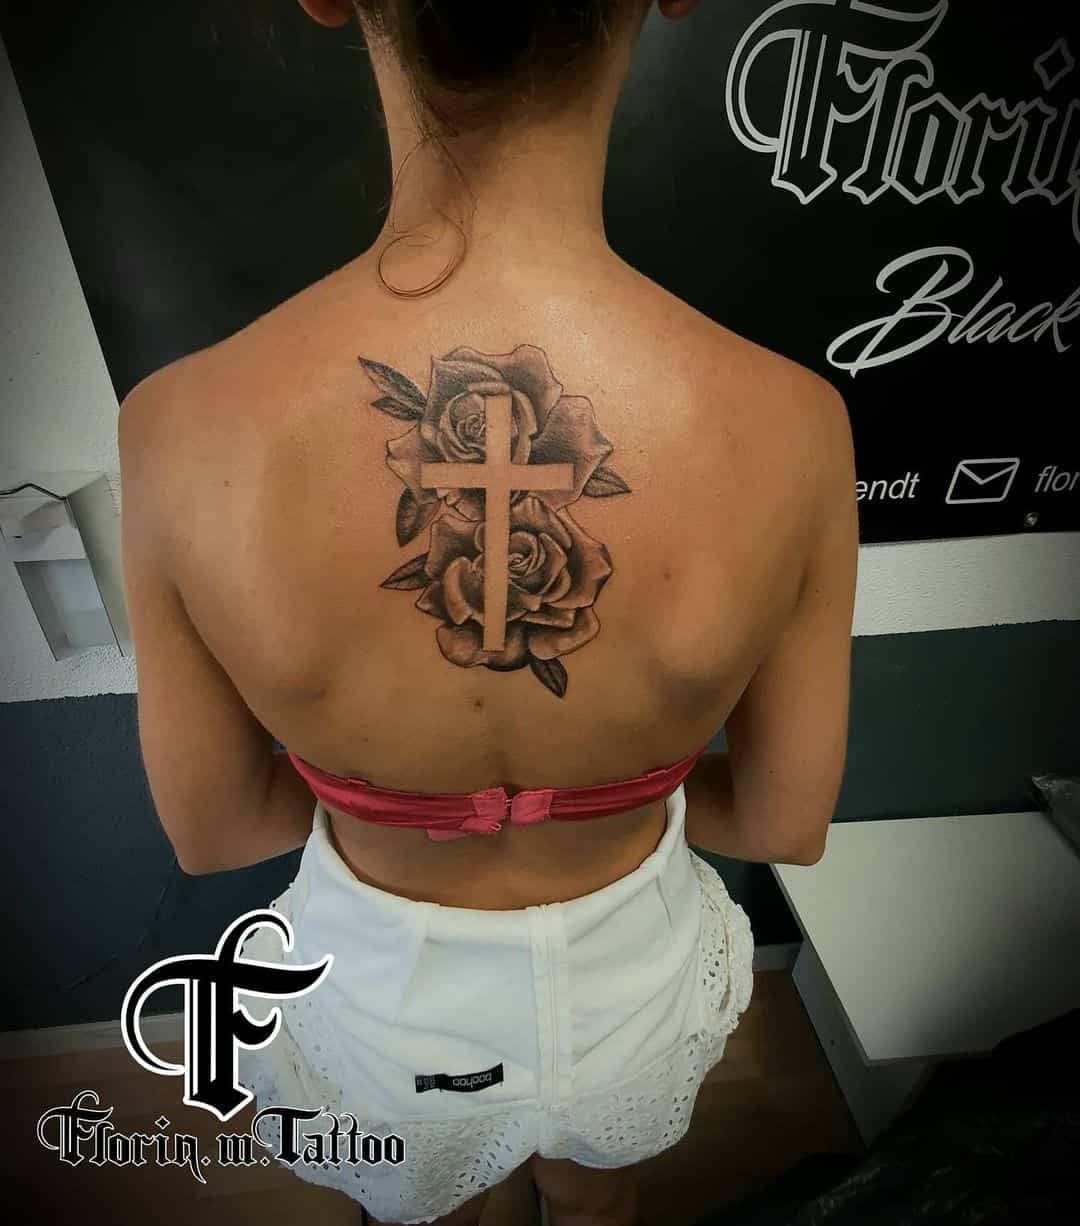 Cross Tattoos Cross Tattoos, Henna, Future Tattoos, - Cross Tattoo Designs,  HD Png Download , Transparent Png Image - PNGitem